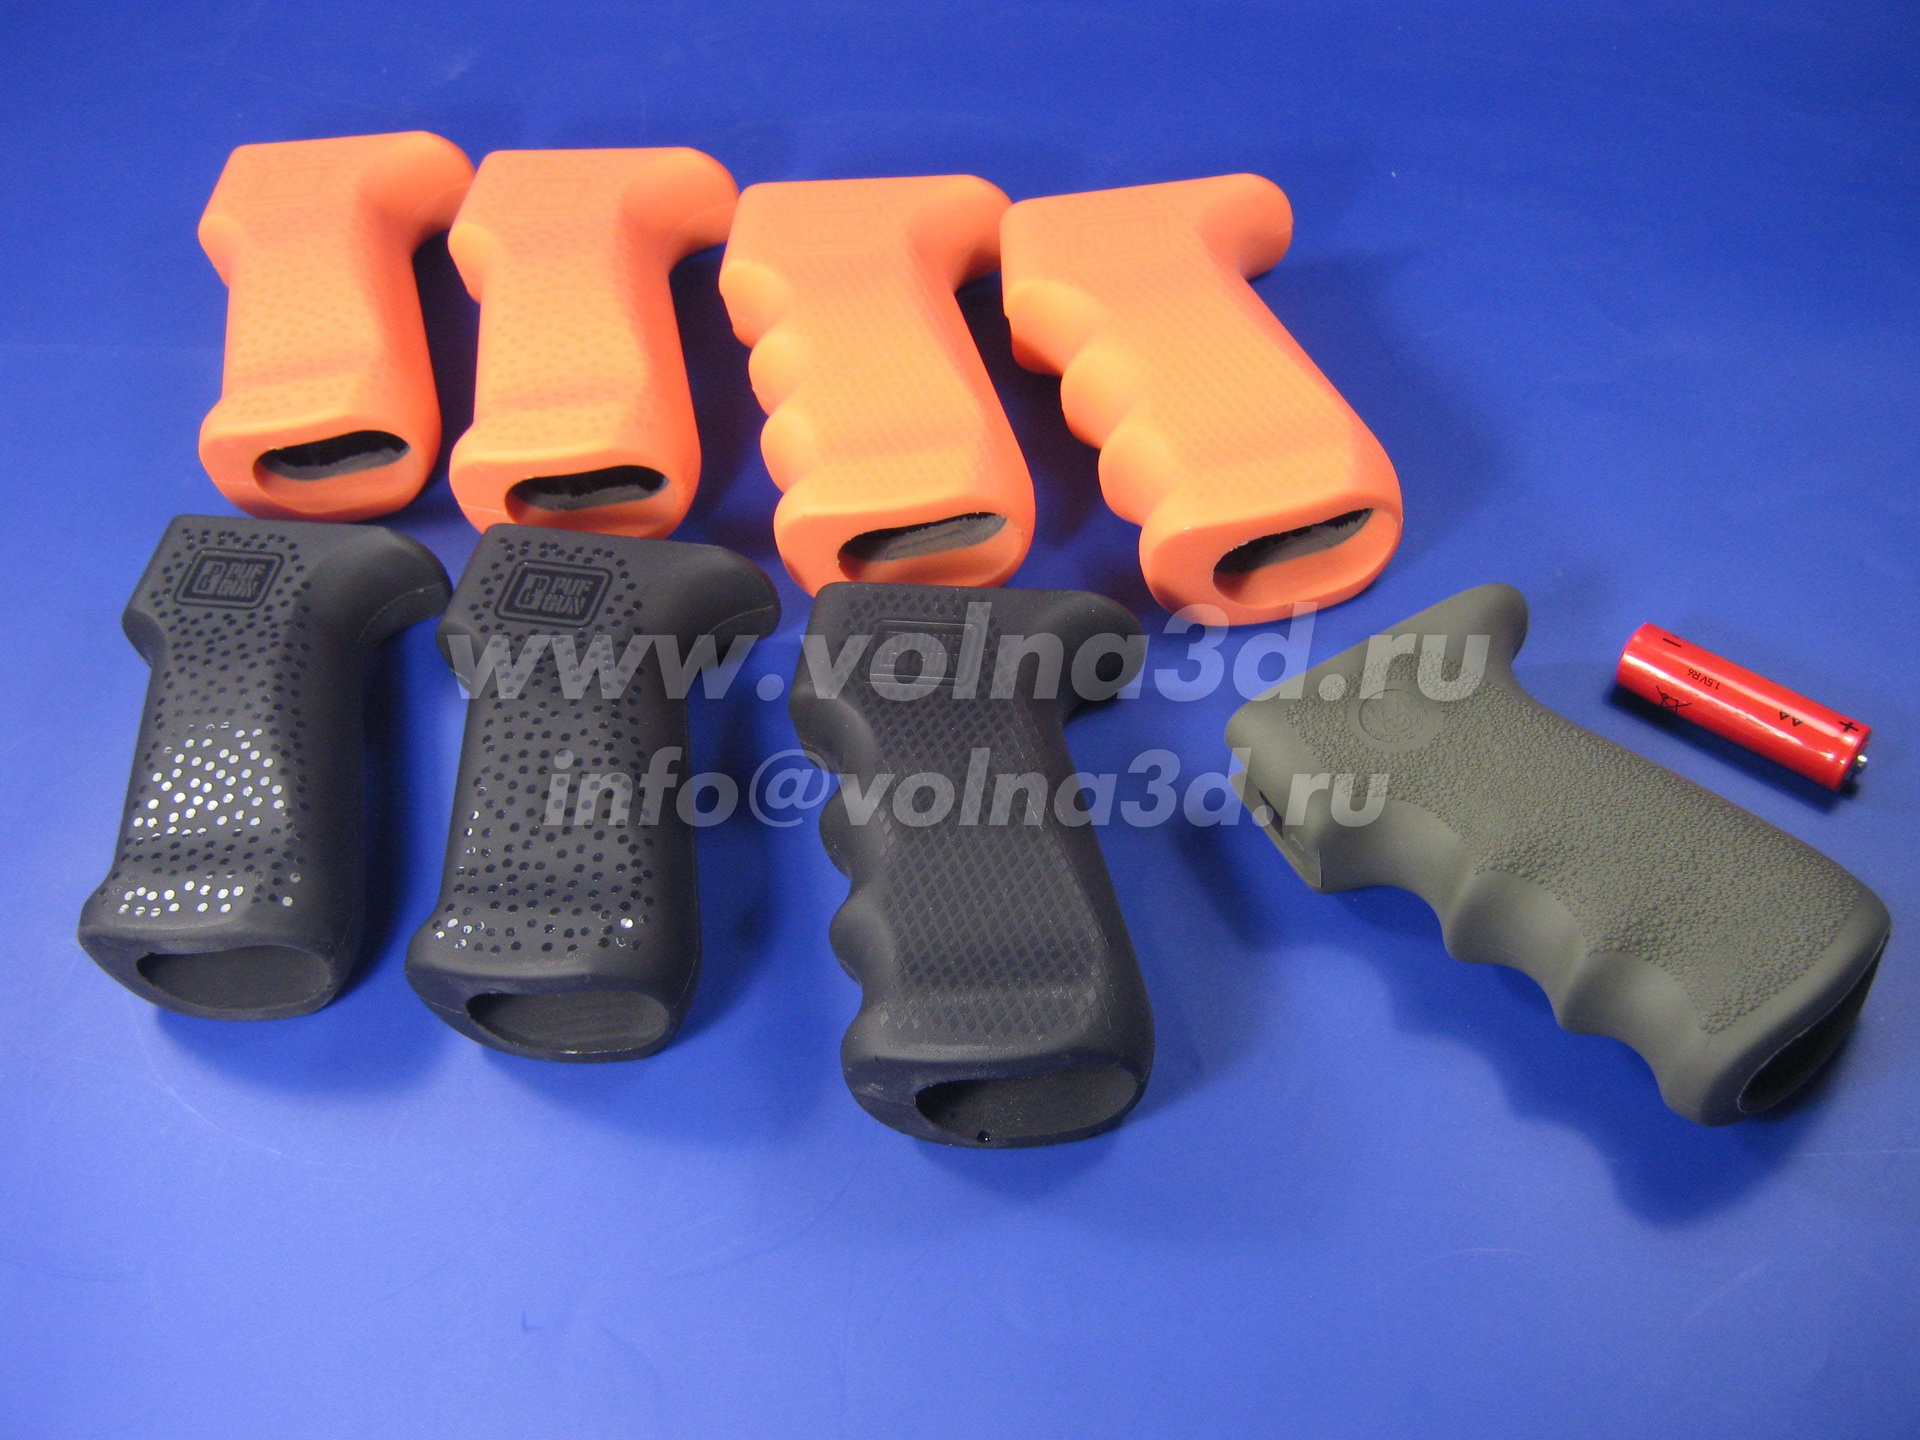 Отлитые в силикон - оранжевые, чёрные и серые ручки для автоматов с разной текстурой